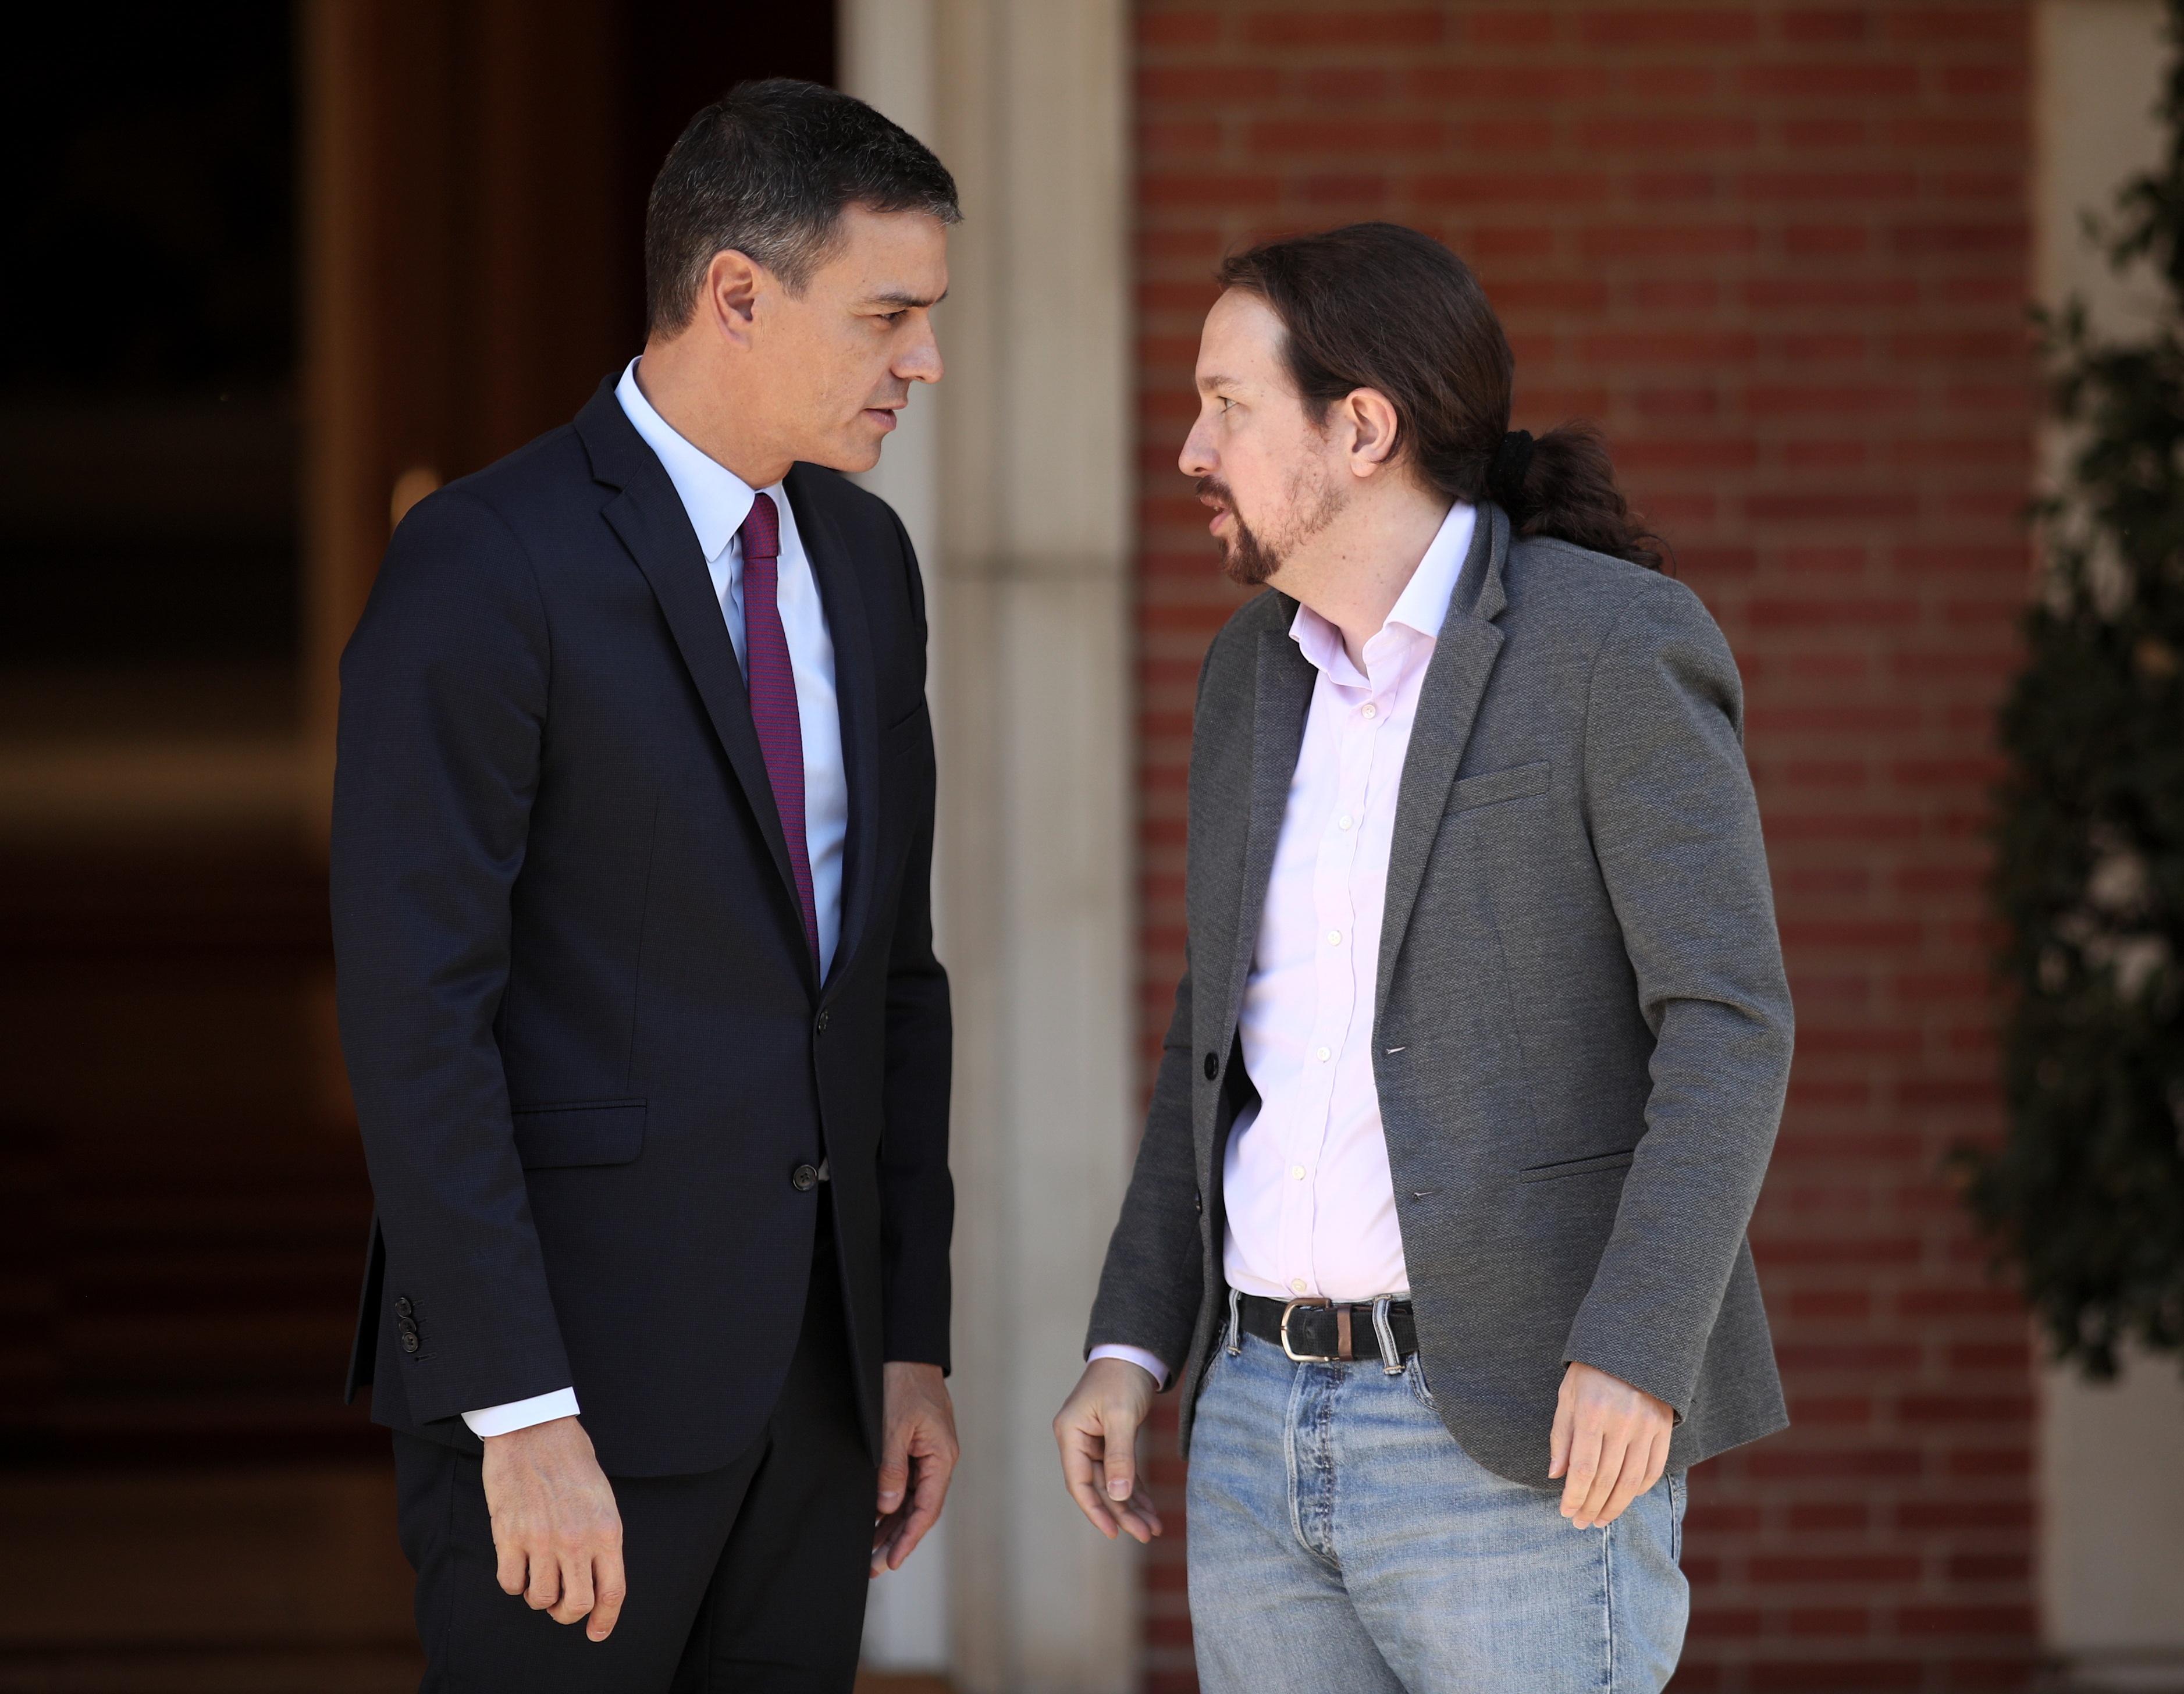 El presidente del Gobierno en funciones Pedro Sánchez y el secretario general de Podemos Pablo Iglesias momentos antes de su reunión en La Moncloa